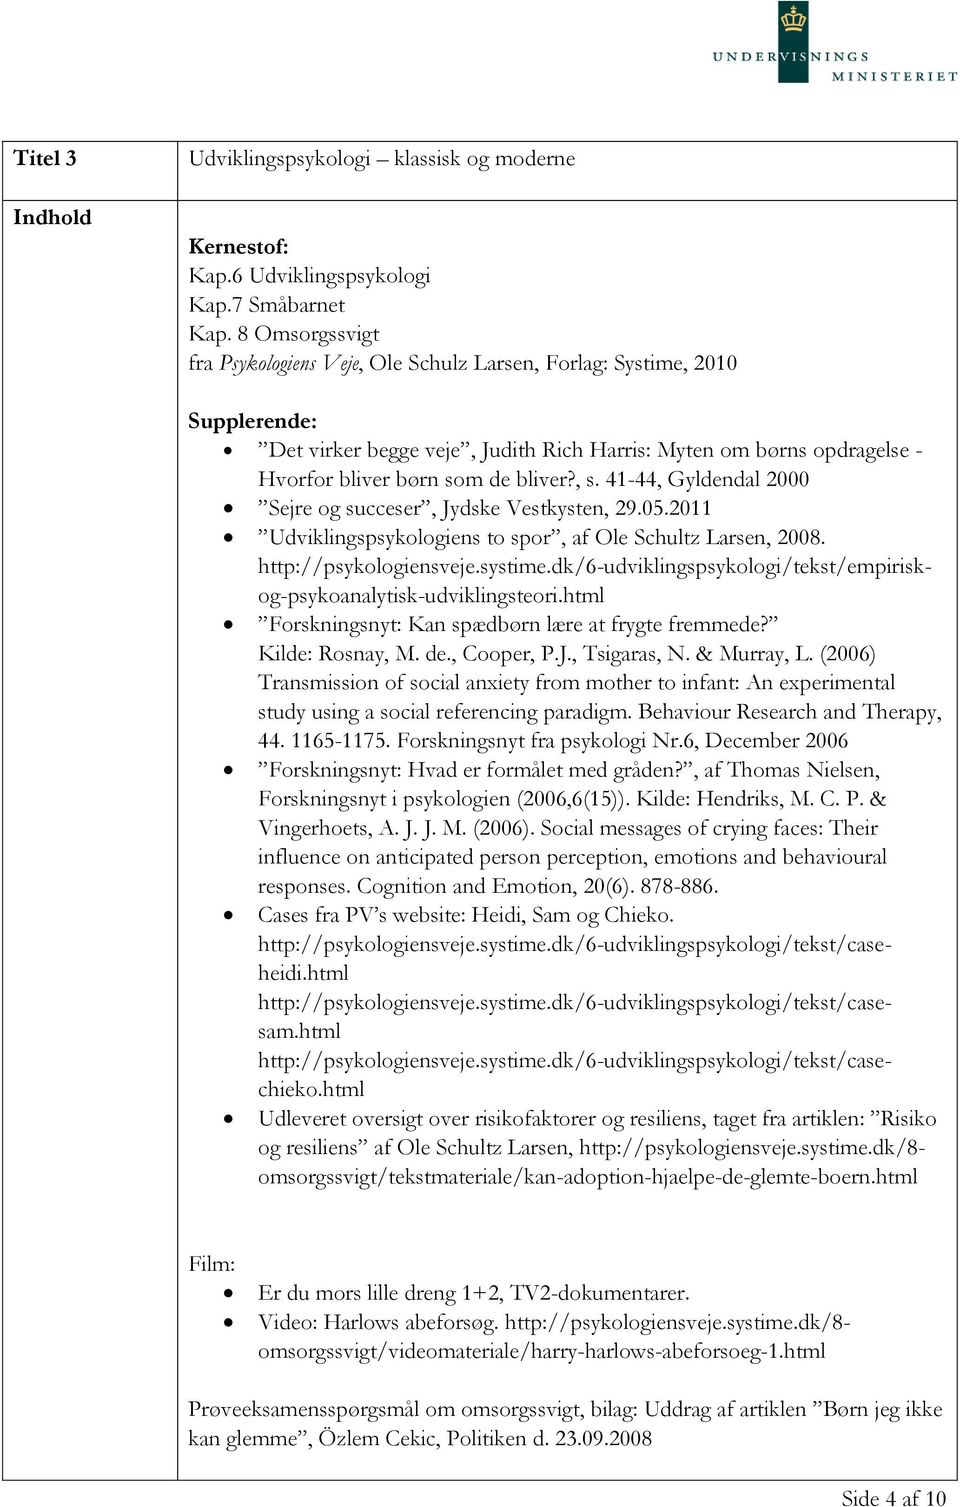 2011 Udviklingspsykologiens to spor, af Ole Schultz Larsen, 2008. http://psykologiensveje.systime.dk/6-udviklingspsykologi/tekst/empiriskog-psykoanalytisk-udviklingsteori.